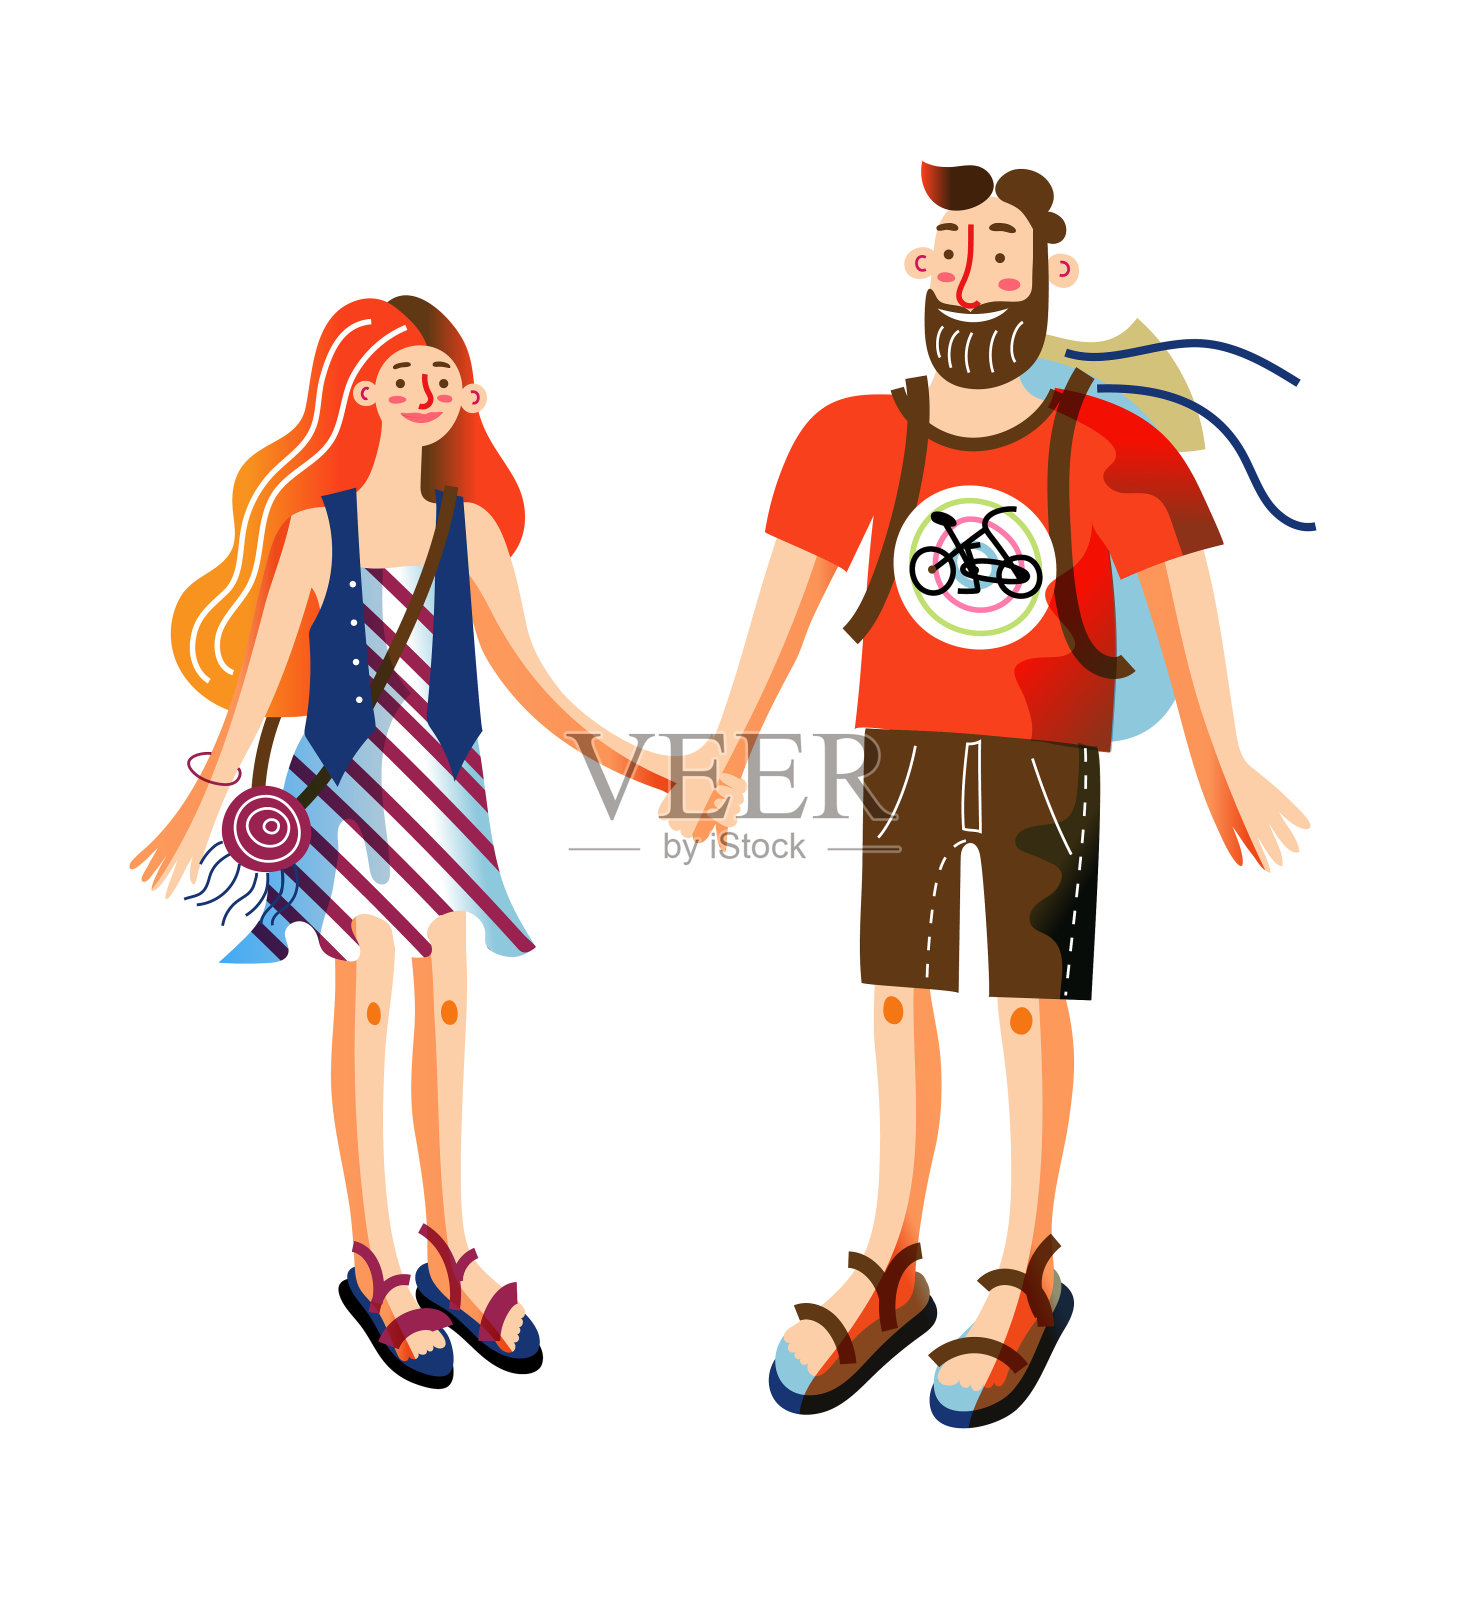 矢量人物插图可爱的夫妇在夏天的衣服设计元素图片